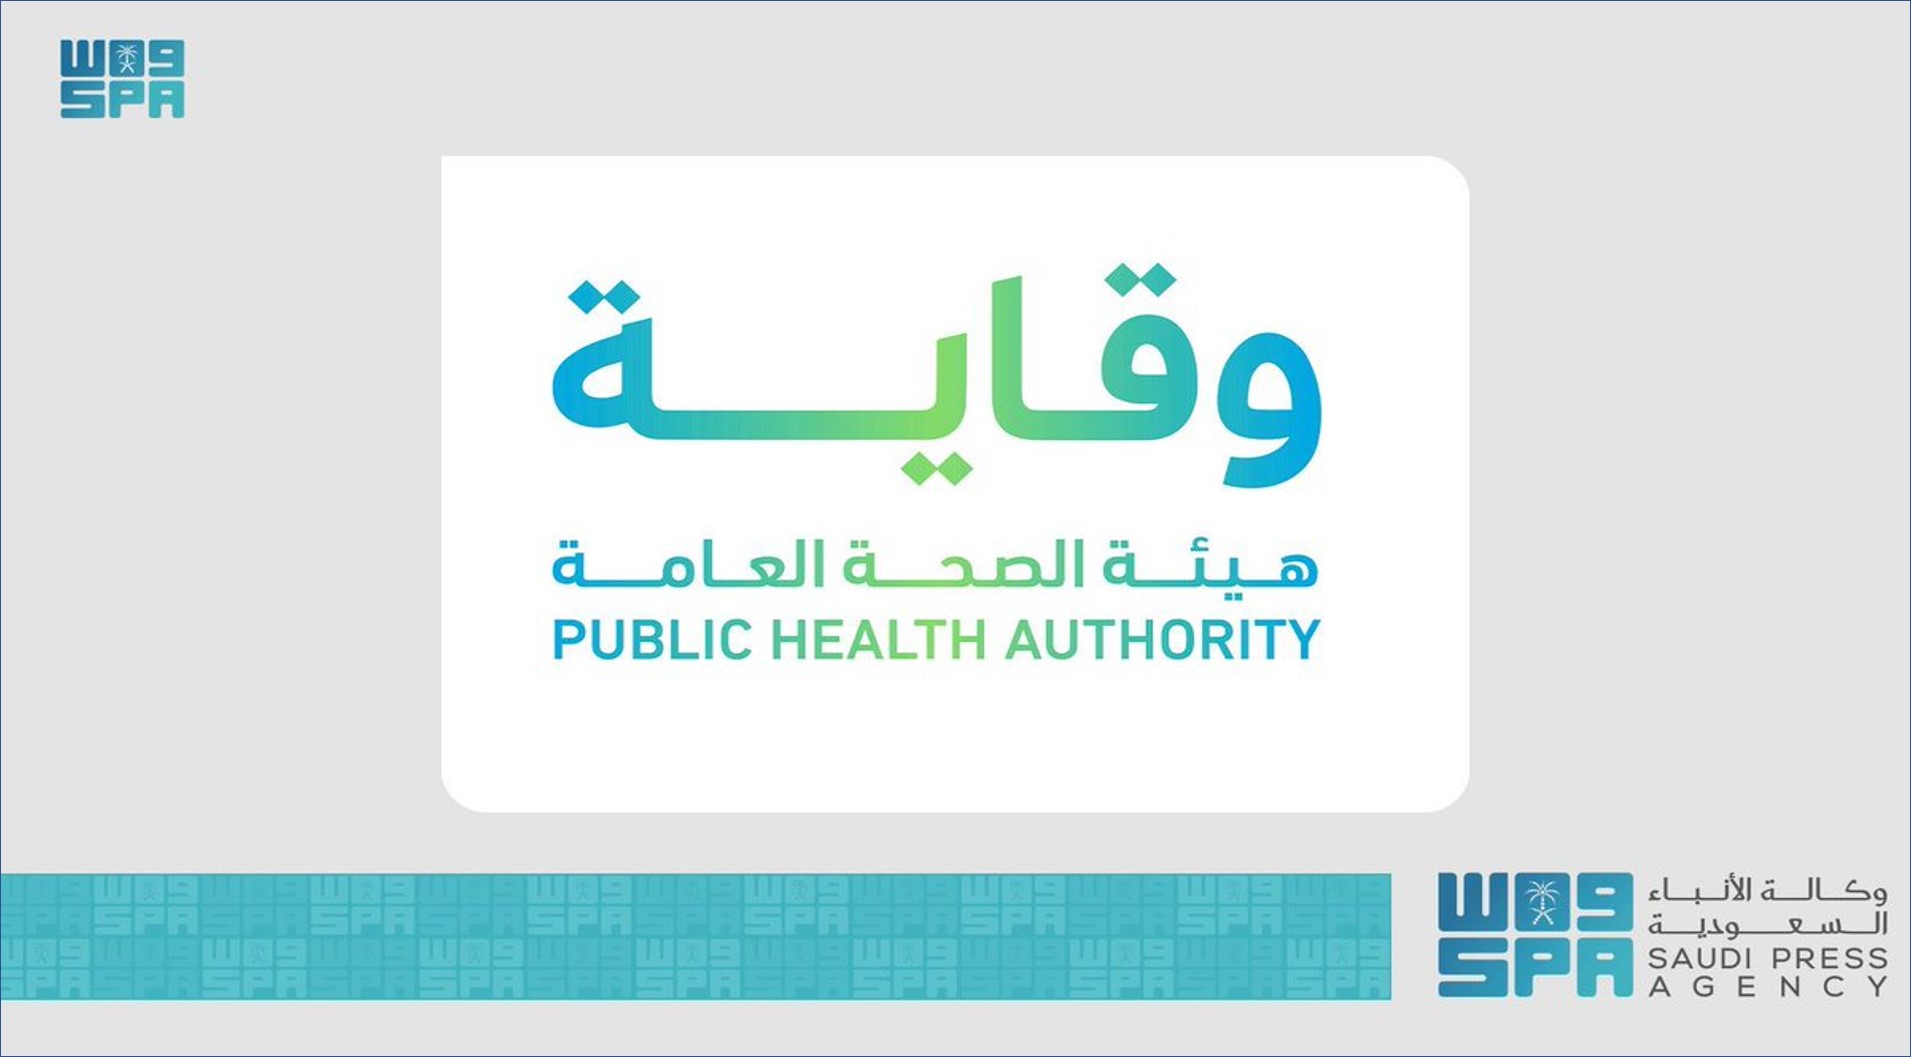 هيئة الصحة العامة تعلن عن وظائفها الإدارية والصحية